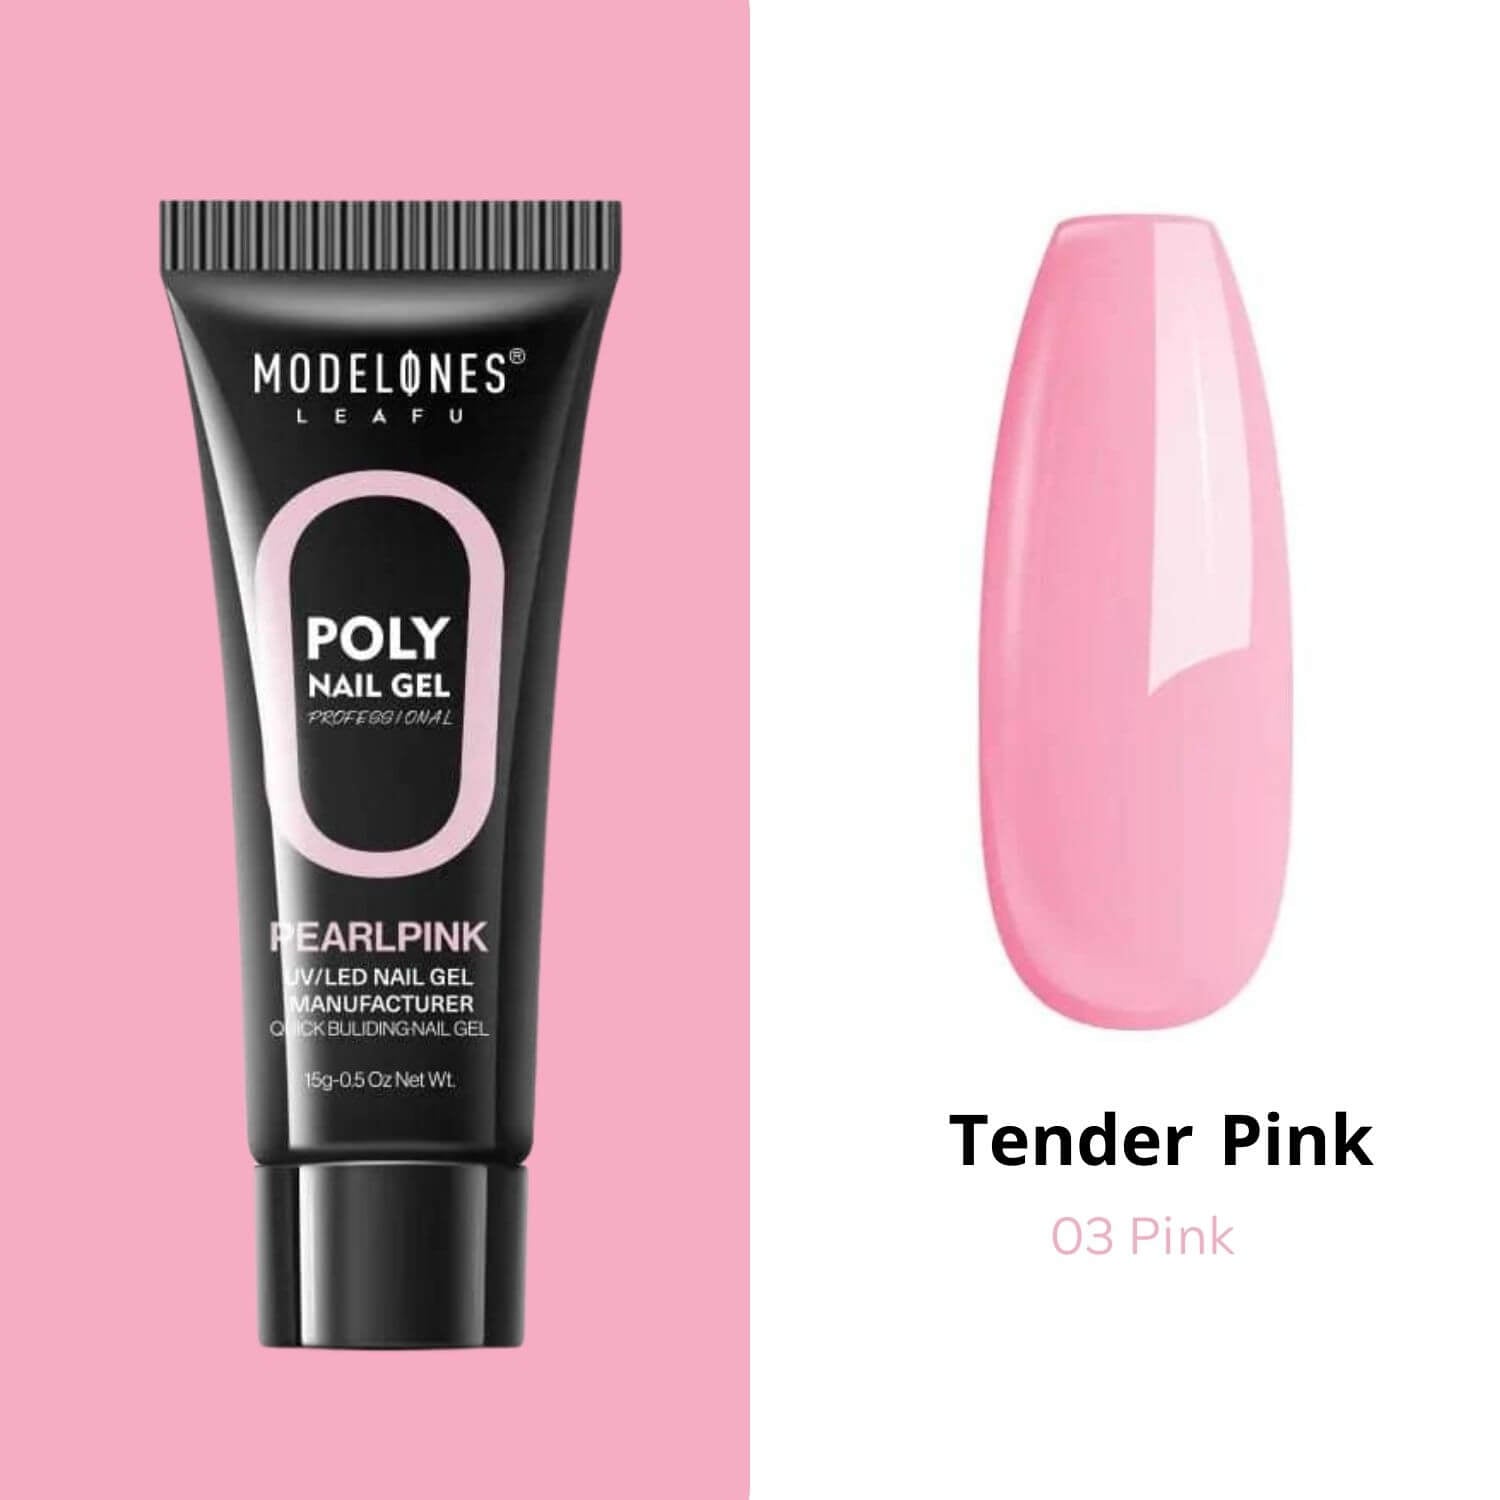 Tender Pink - Poly Nail Gel  (15g)